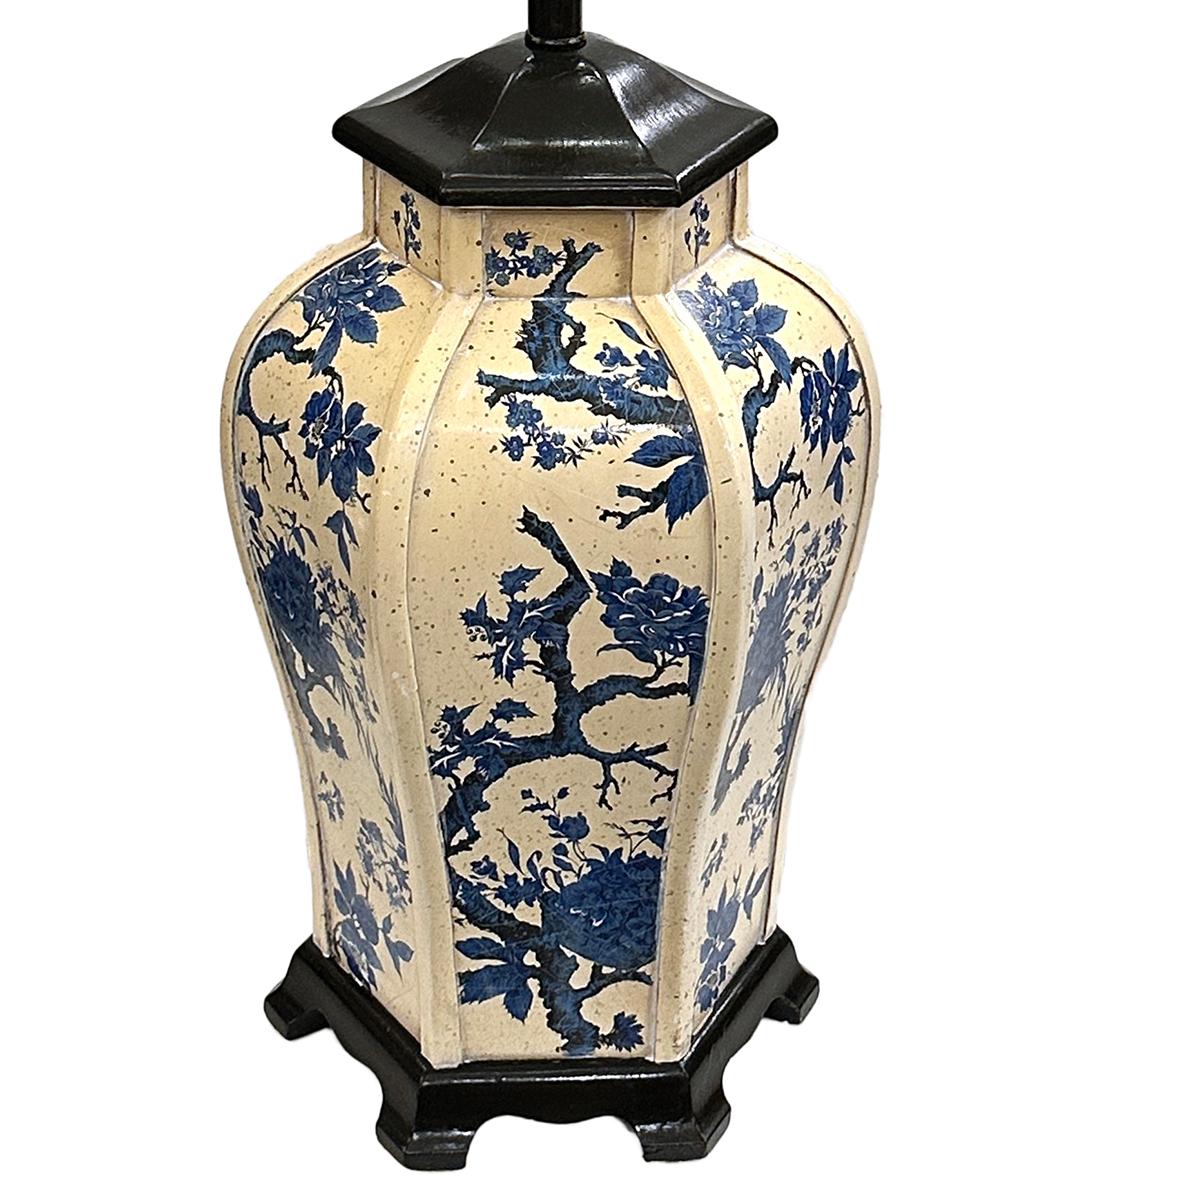 Lampe de Chinoiserie anglaise des années 1950 à motif floral.

Mesures :
Hauteur du corps : 19
Hauteur jusqu'à l'appui de l'abat-jour : 32